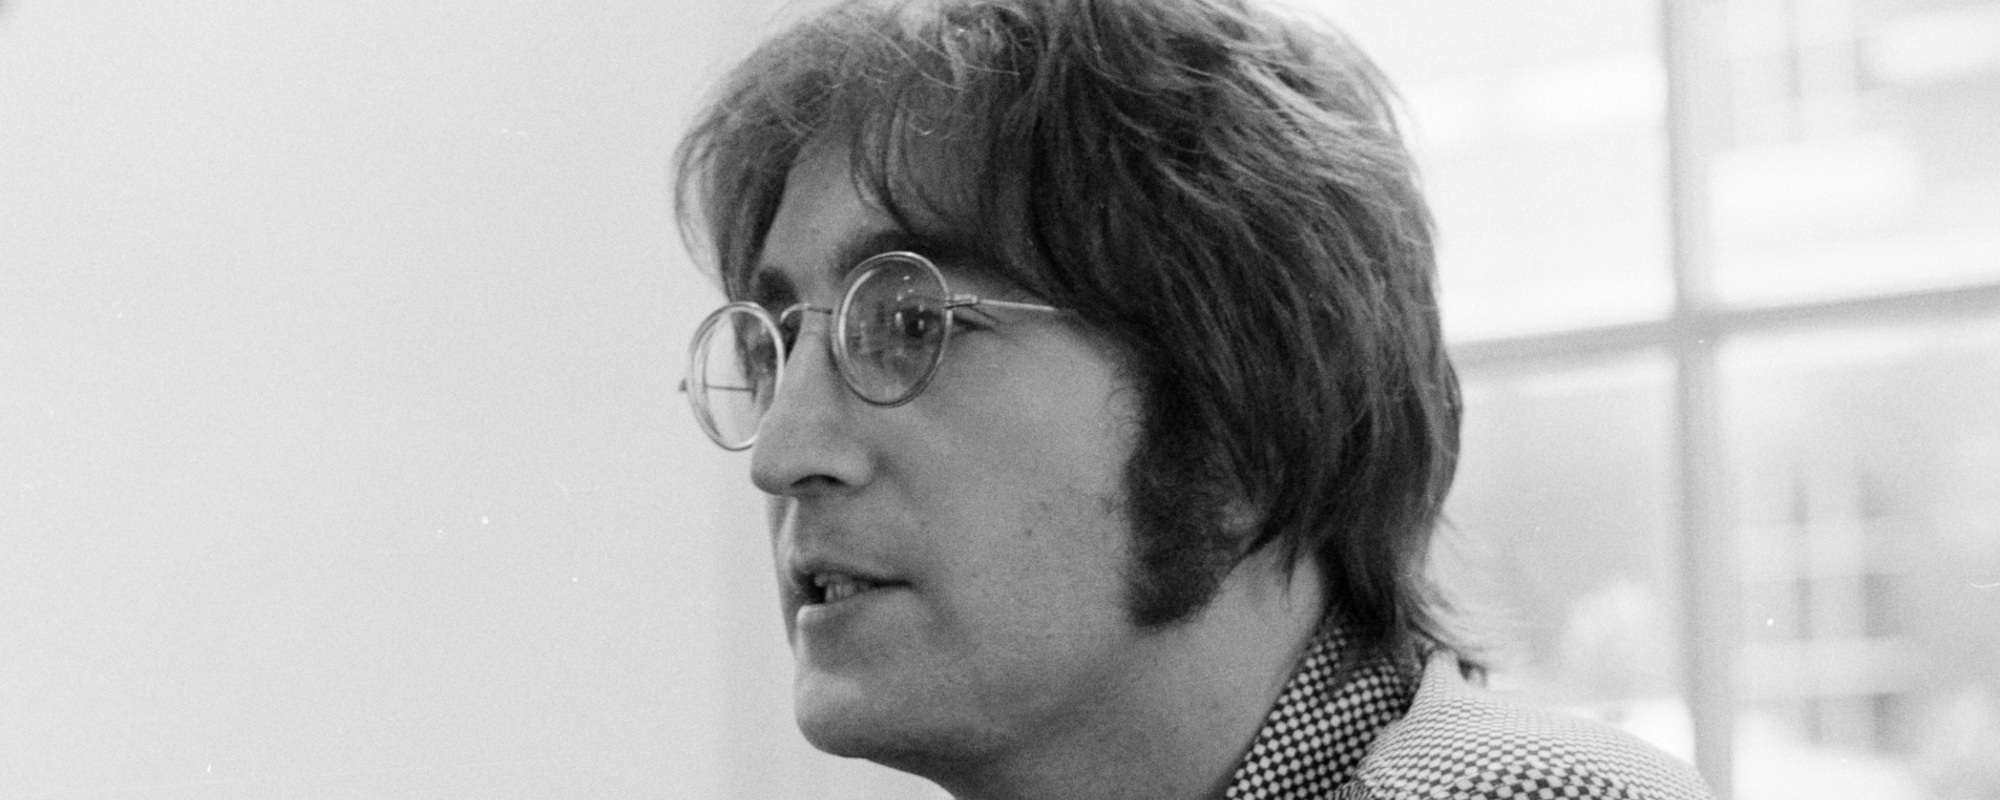 The Death of John Lennon: A Look Inside Lennon’s Final Day